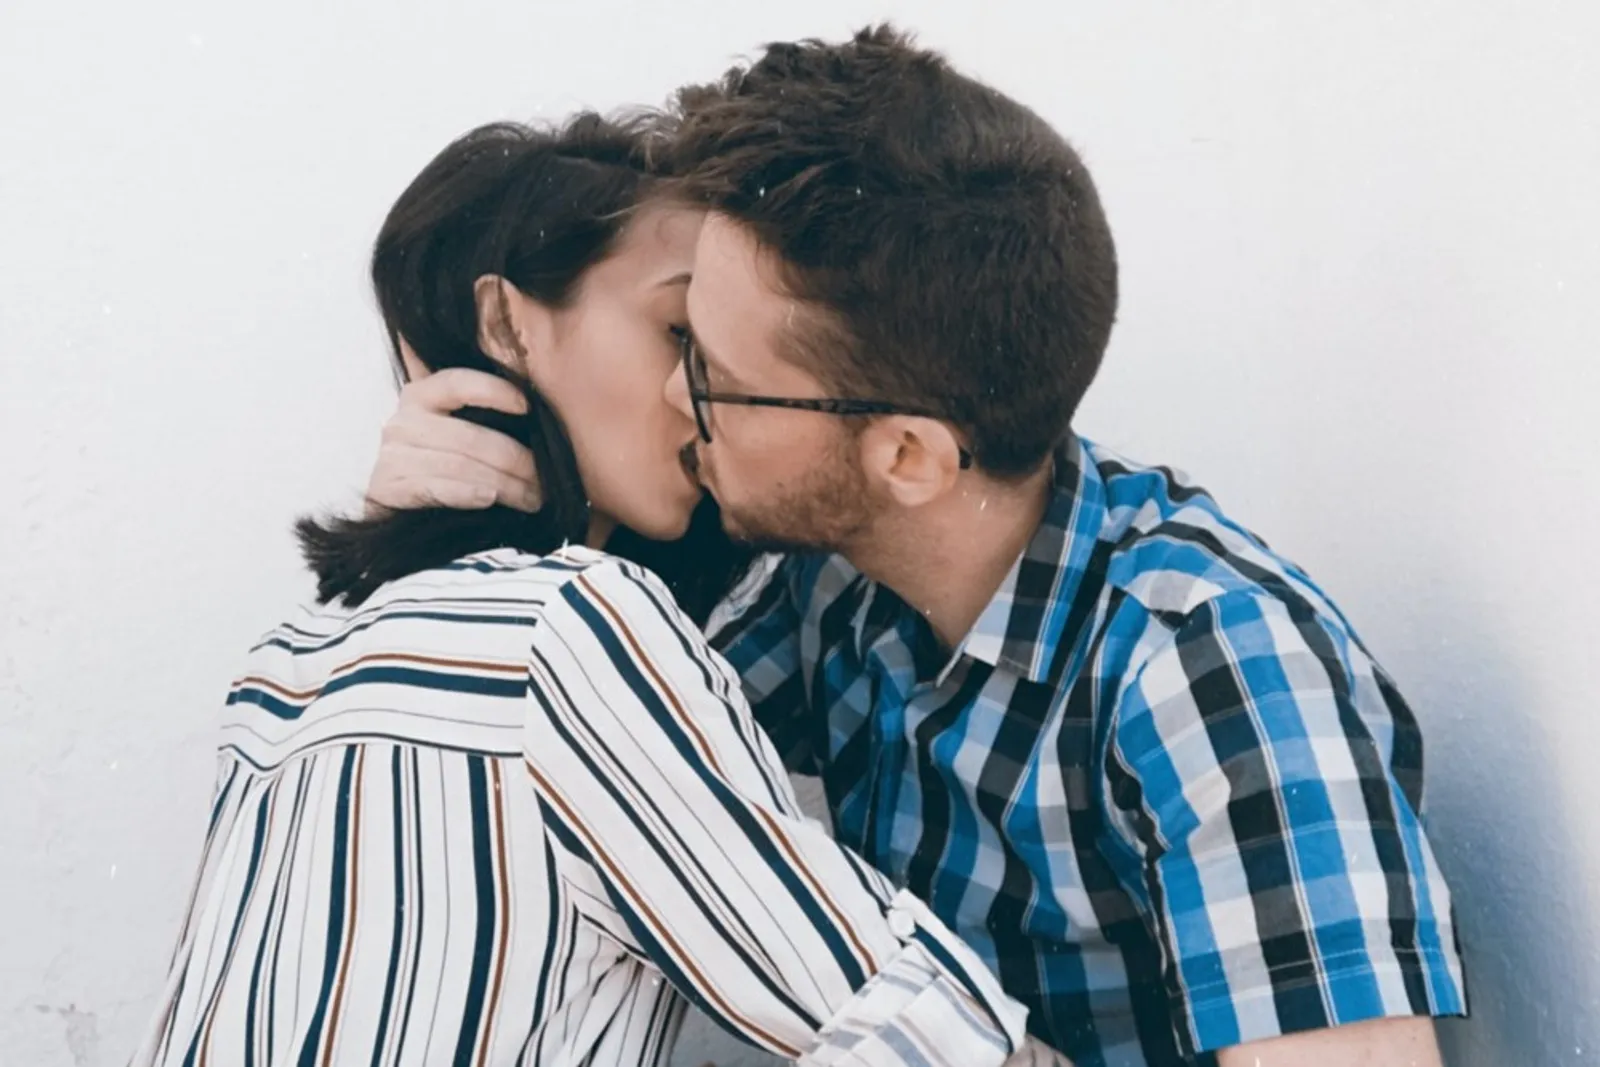 Ini 9 Kesalahan Saat Berciuman yang Sering Terjadi, Jangan Diulangi!